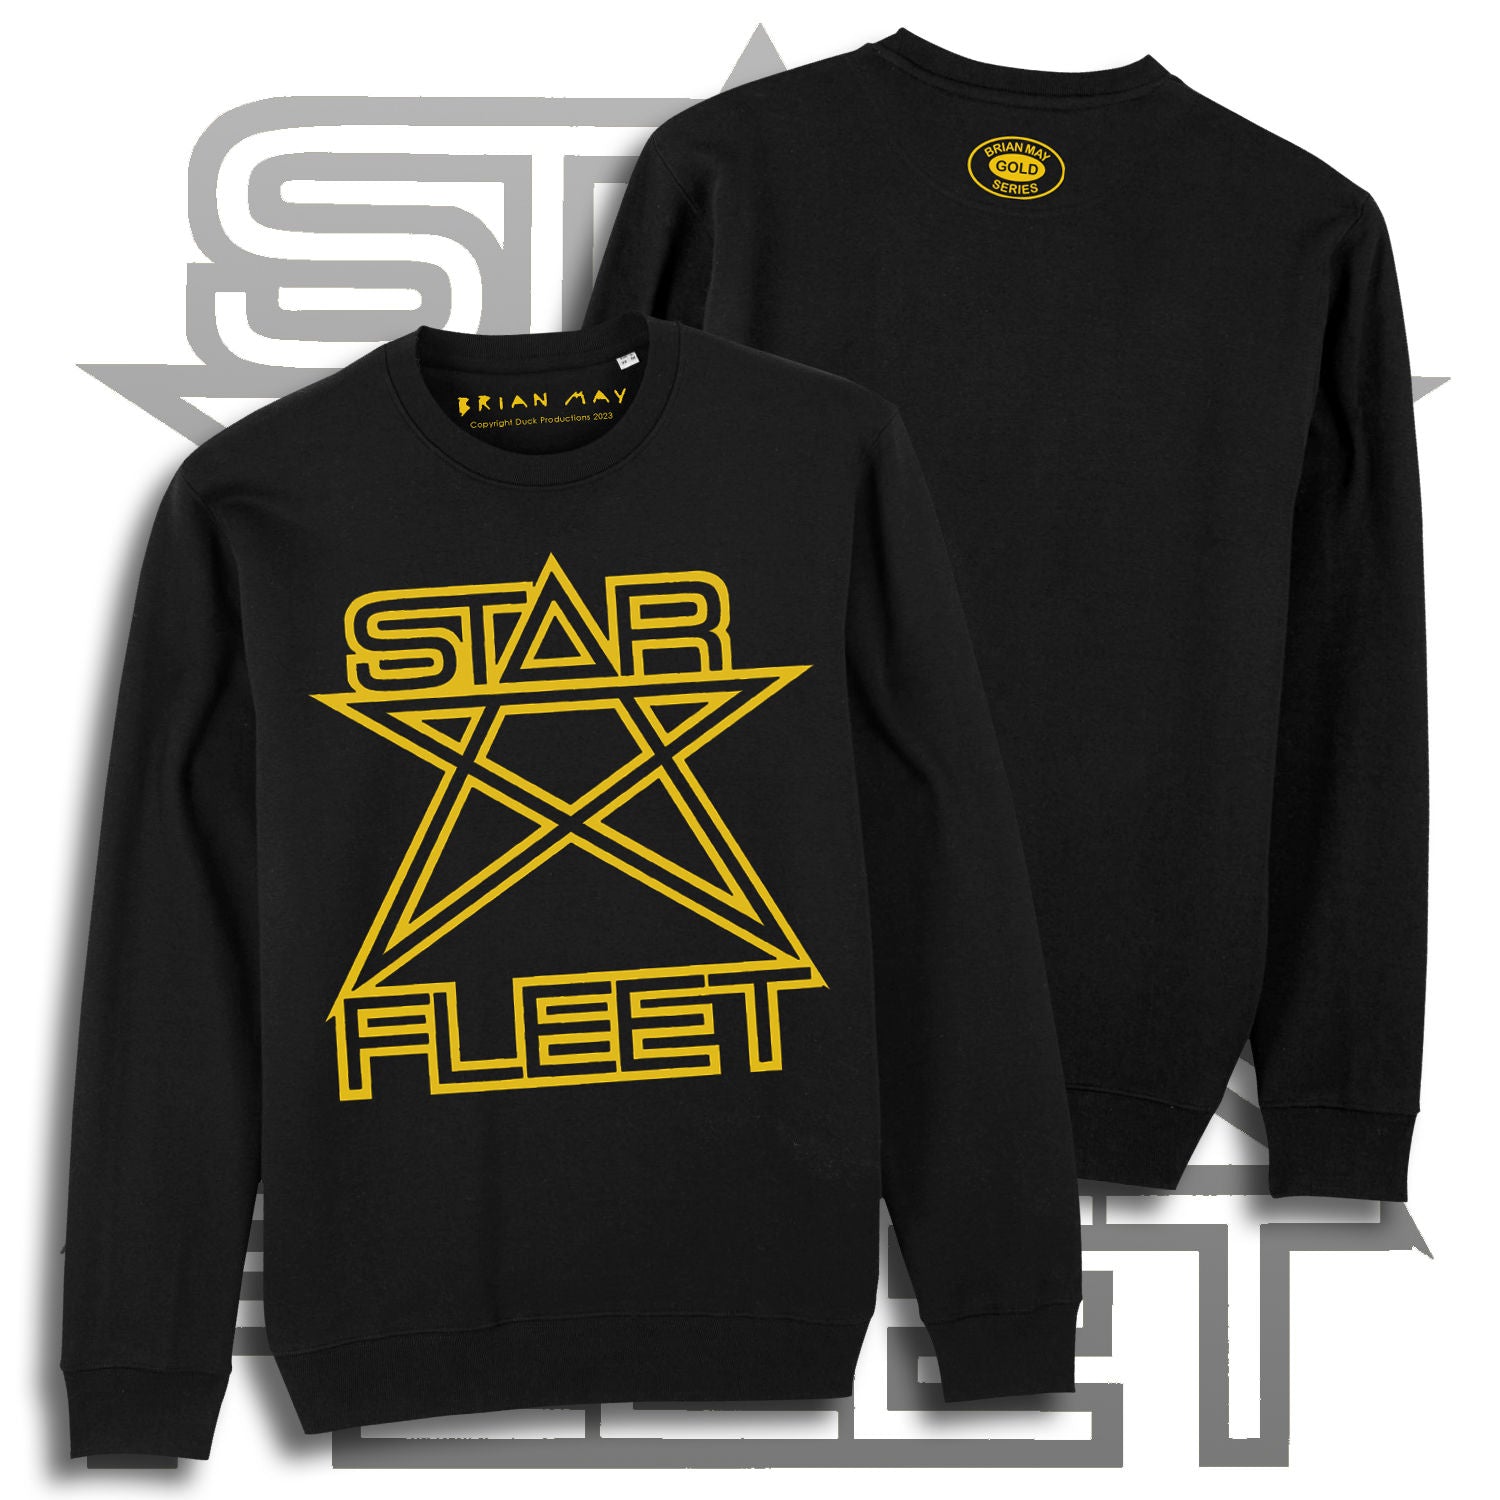 Brian May - Star Fleet Yellow Logo Sweatshirt